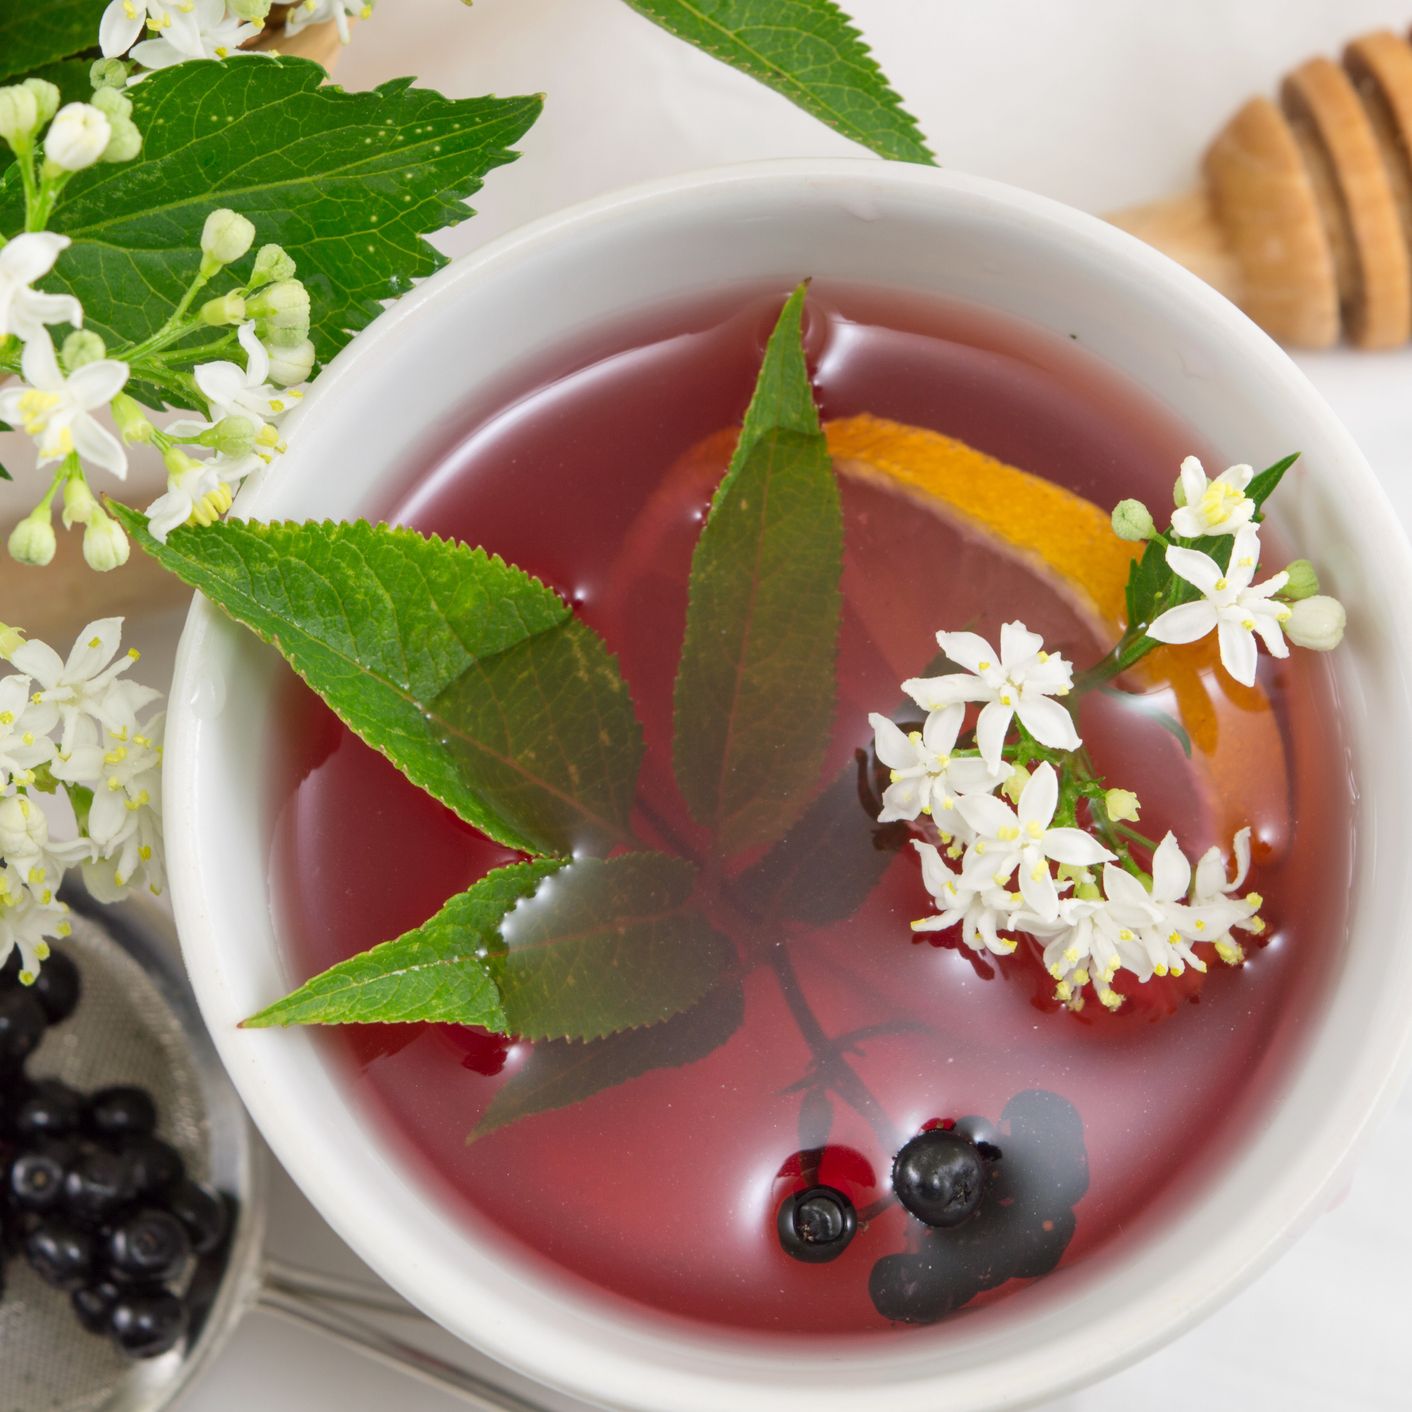 10 tés calmantes que pueden combatir los síntomas del resfriado cuando se está enfermo